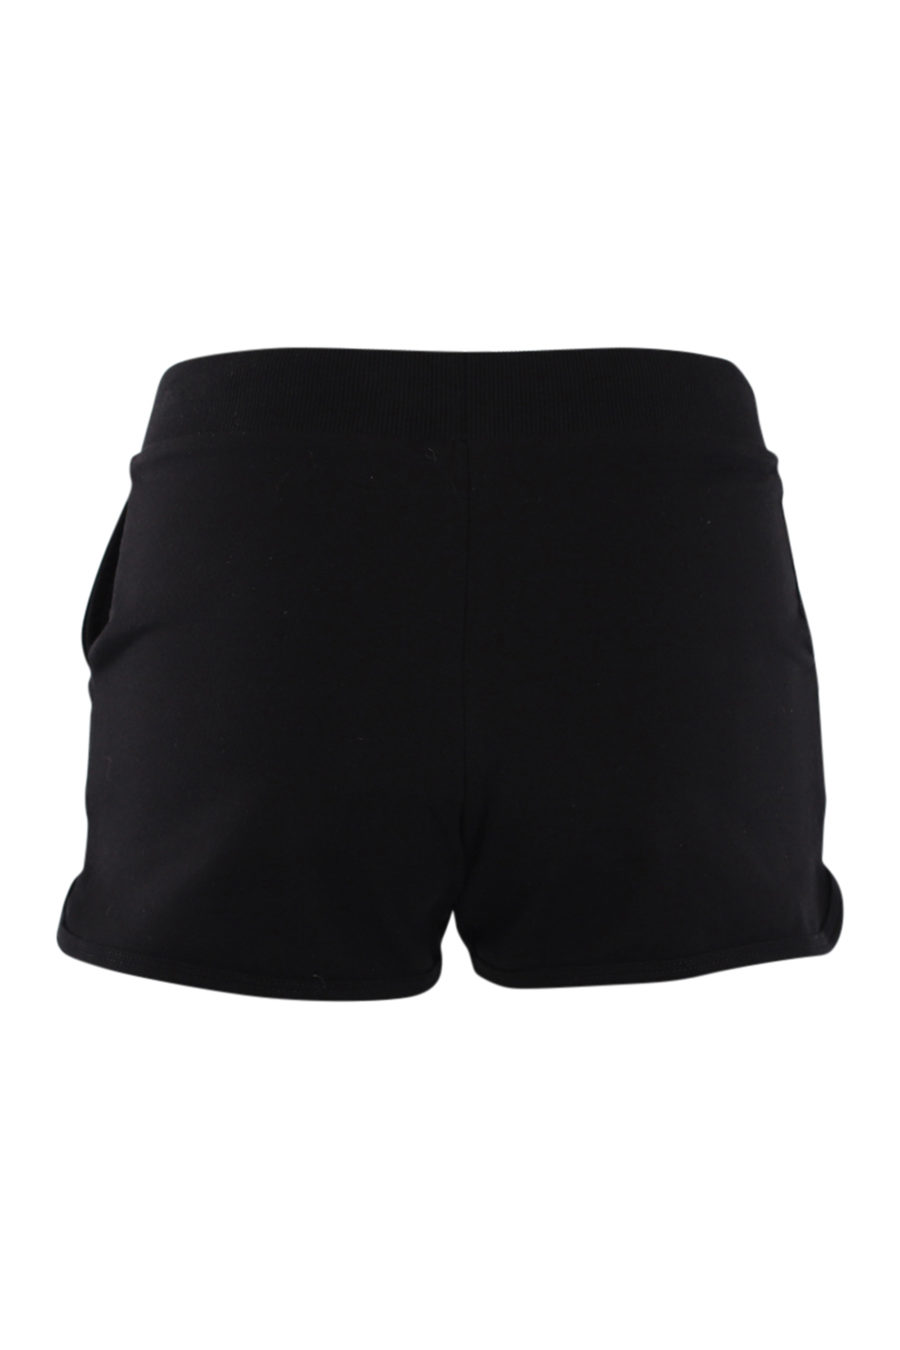 Pantalón corto negro con logo tropical - IMG 0559